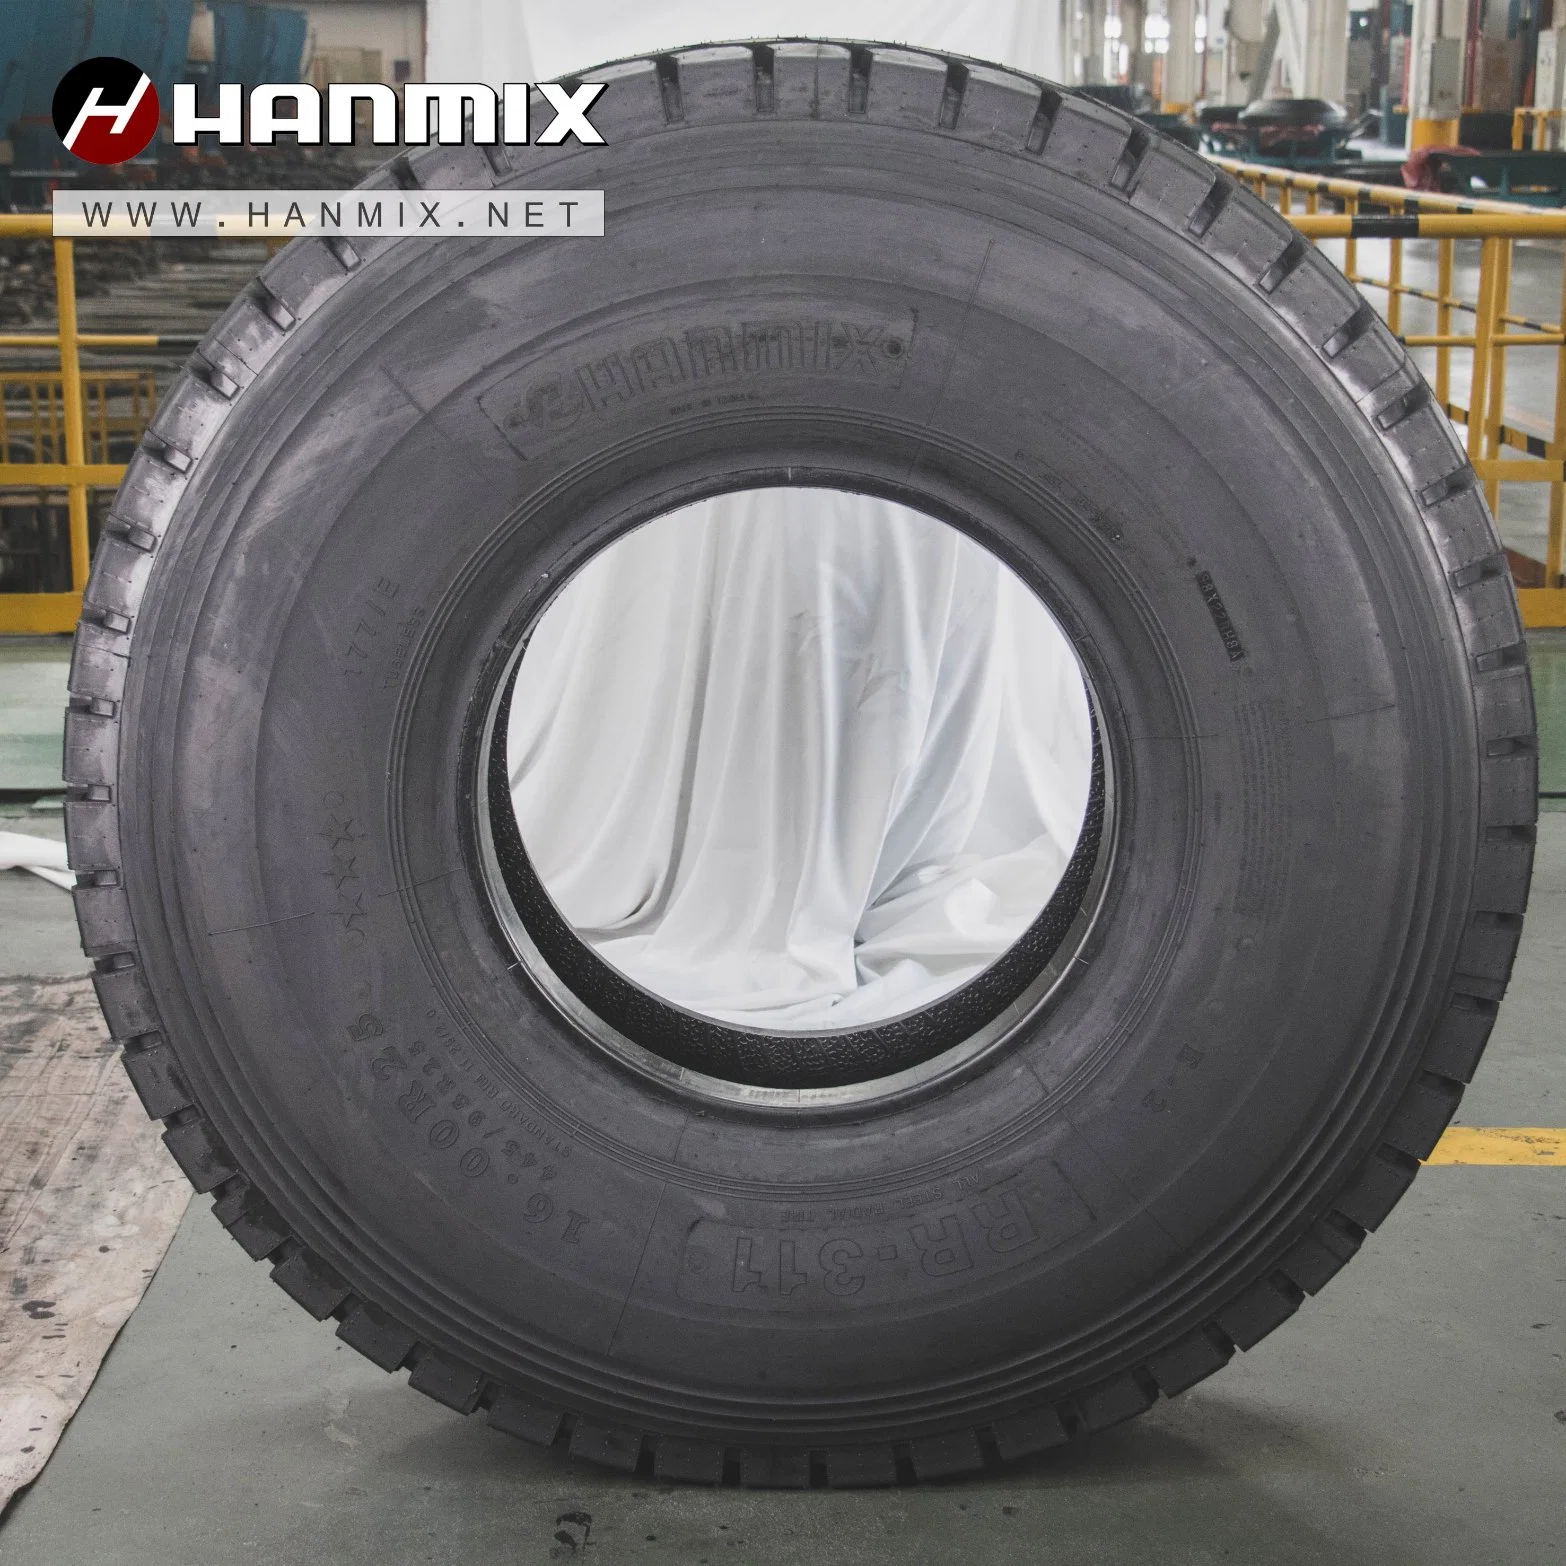 Шины Hanmix All Steel Radial E2/L2 OTR 16,00r25 14,00r25 14,00r24 Шины с радиальным кордом для бездорожья Saso